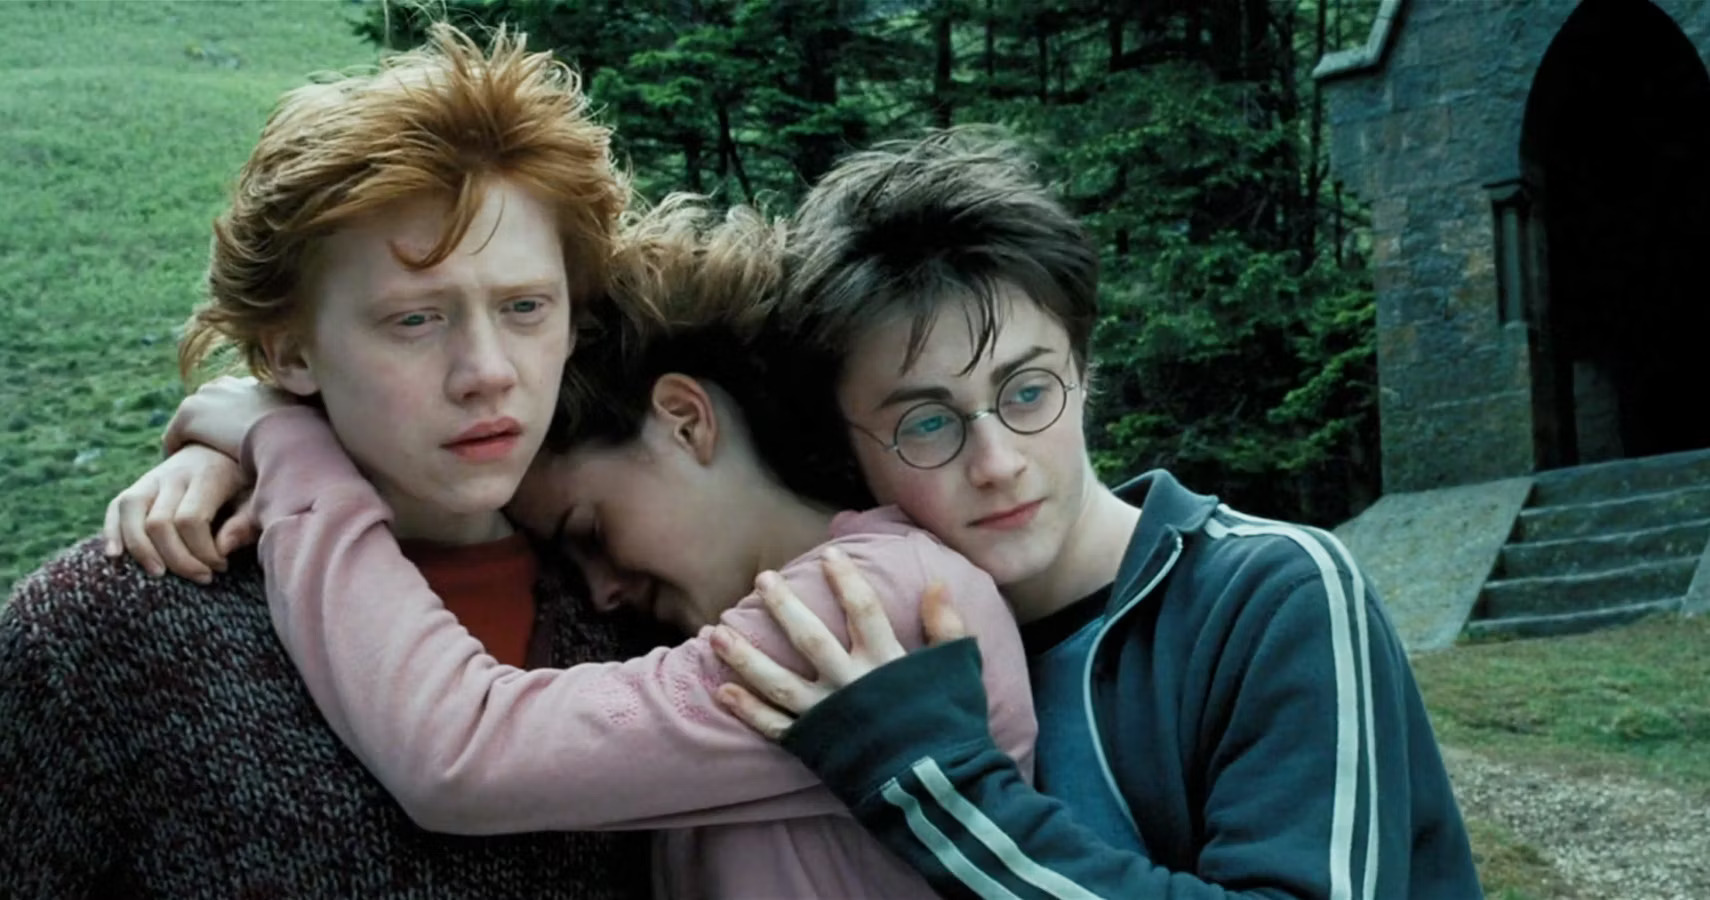 CRÍTICA: Harry Potter y el Prisionero de Azkaban – la mejor y más creativa entrega de la saga